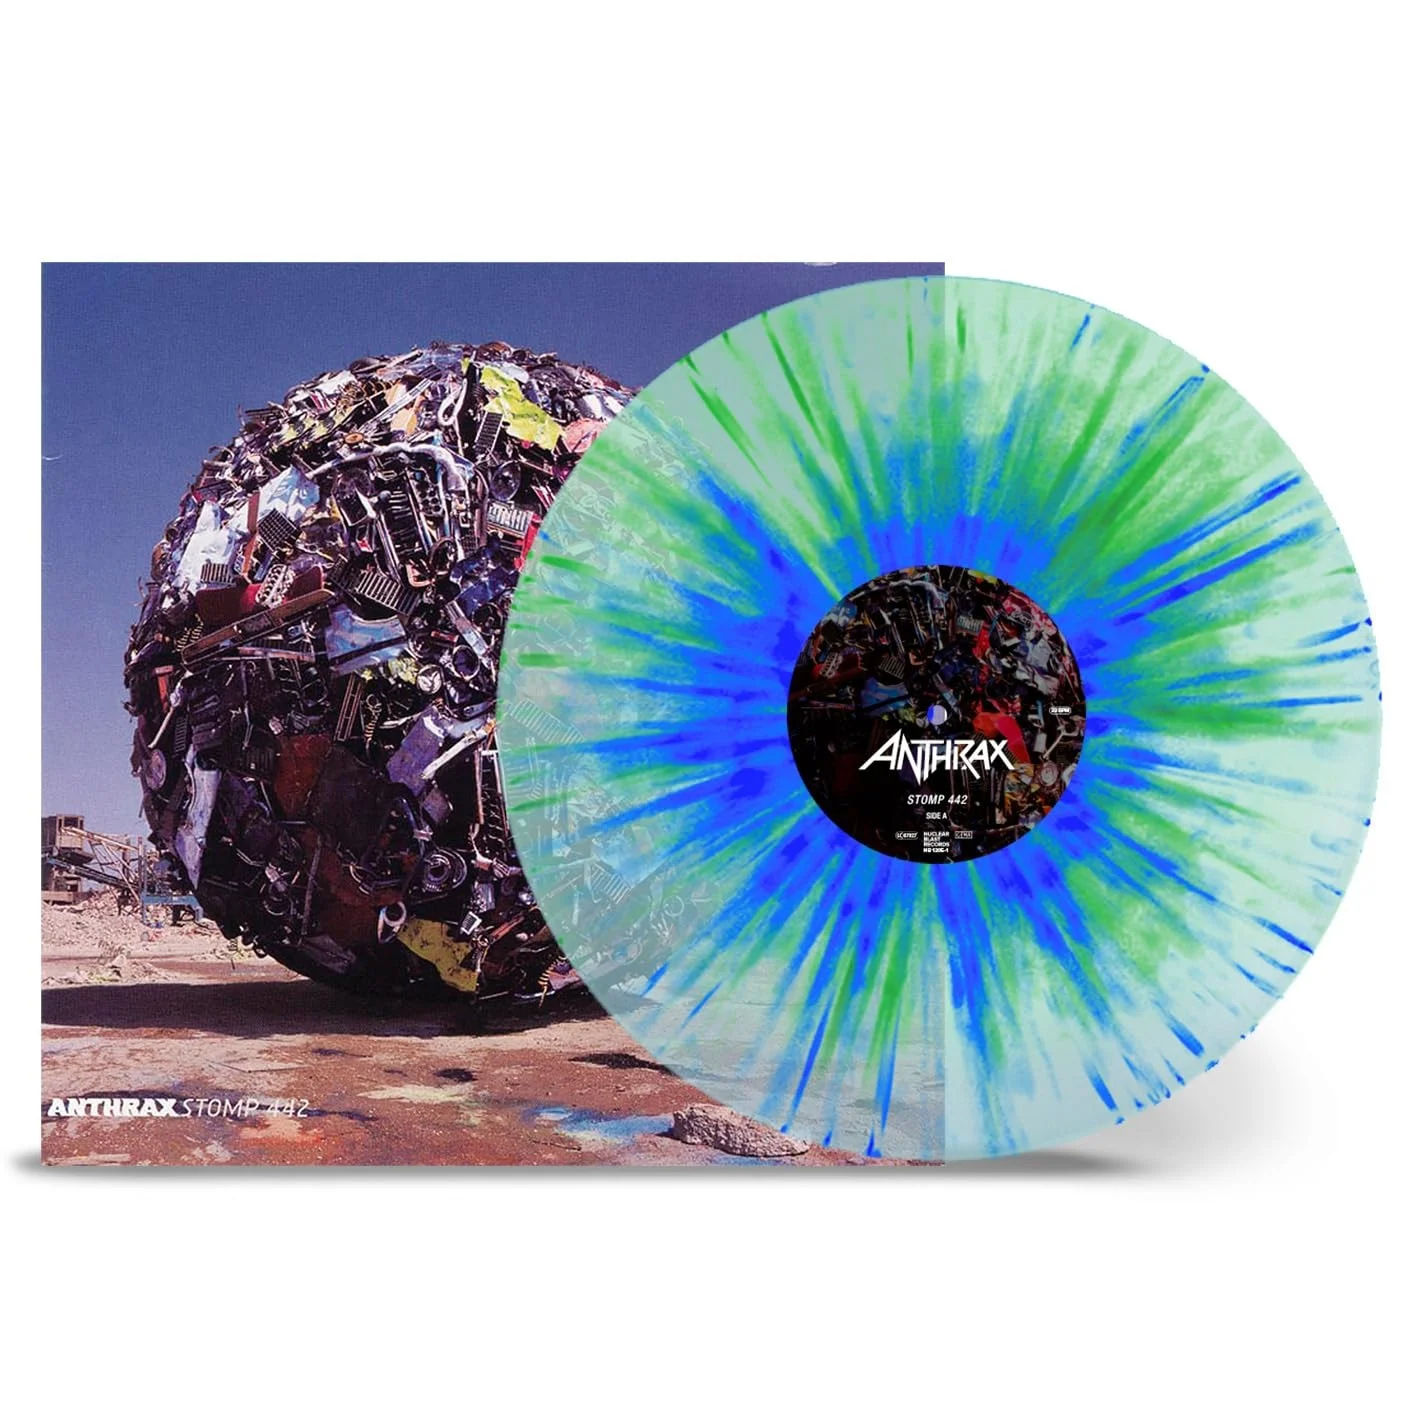 ANTHRAX - STOMP 442 Clear/blue/green splatter (LP)